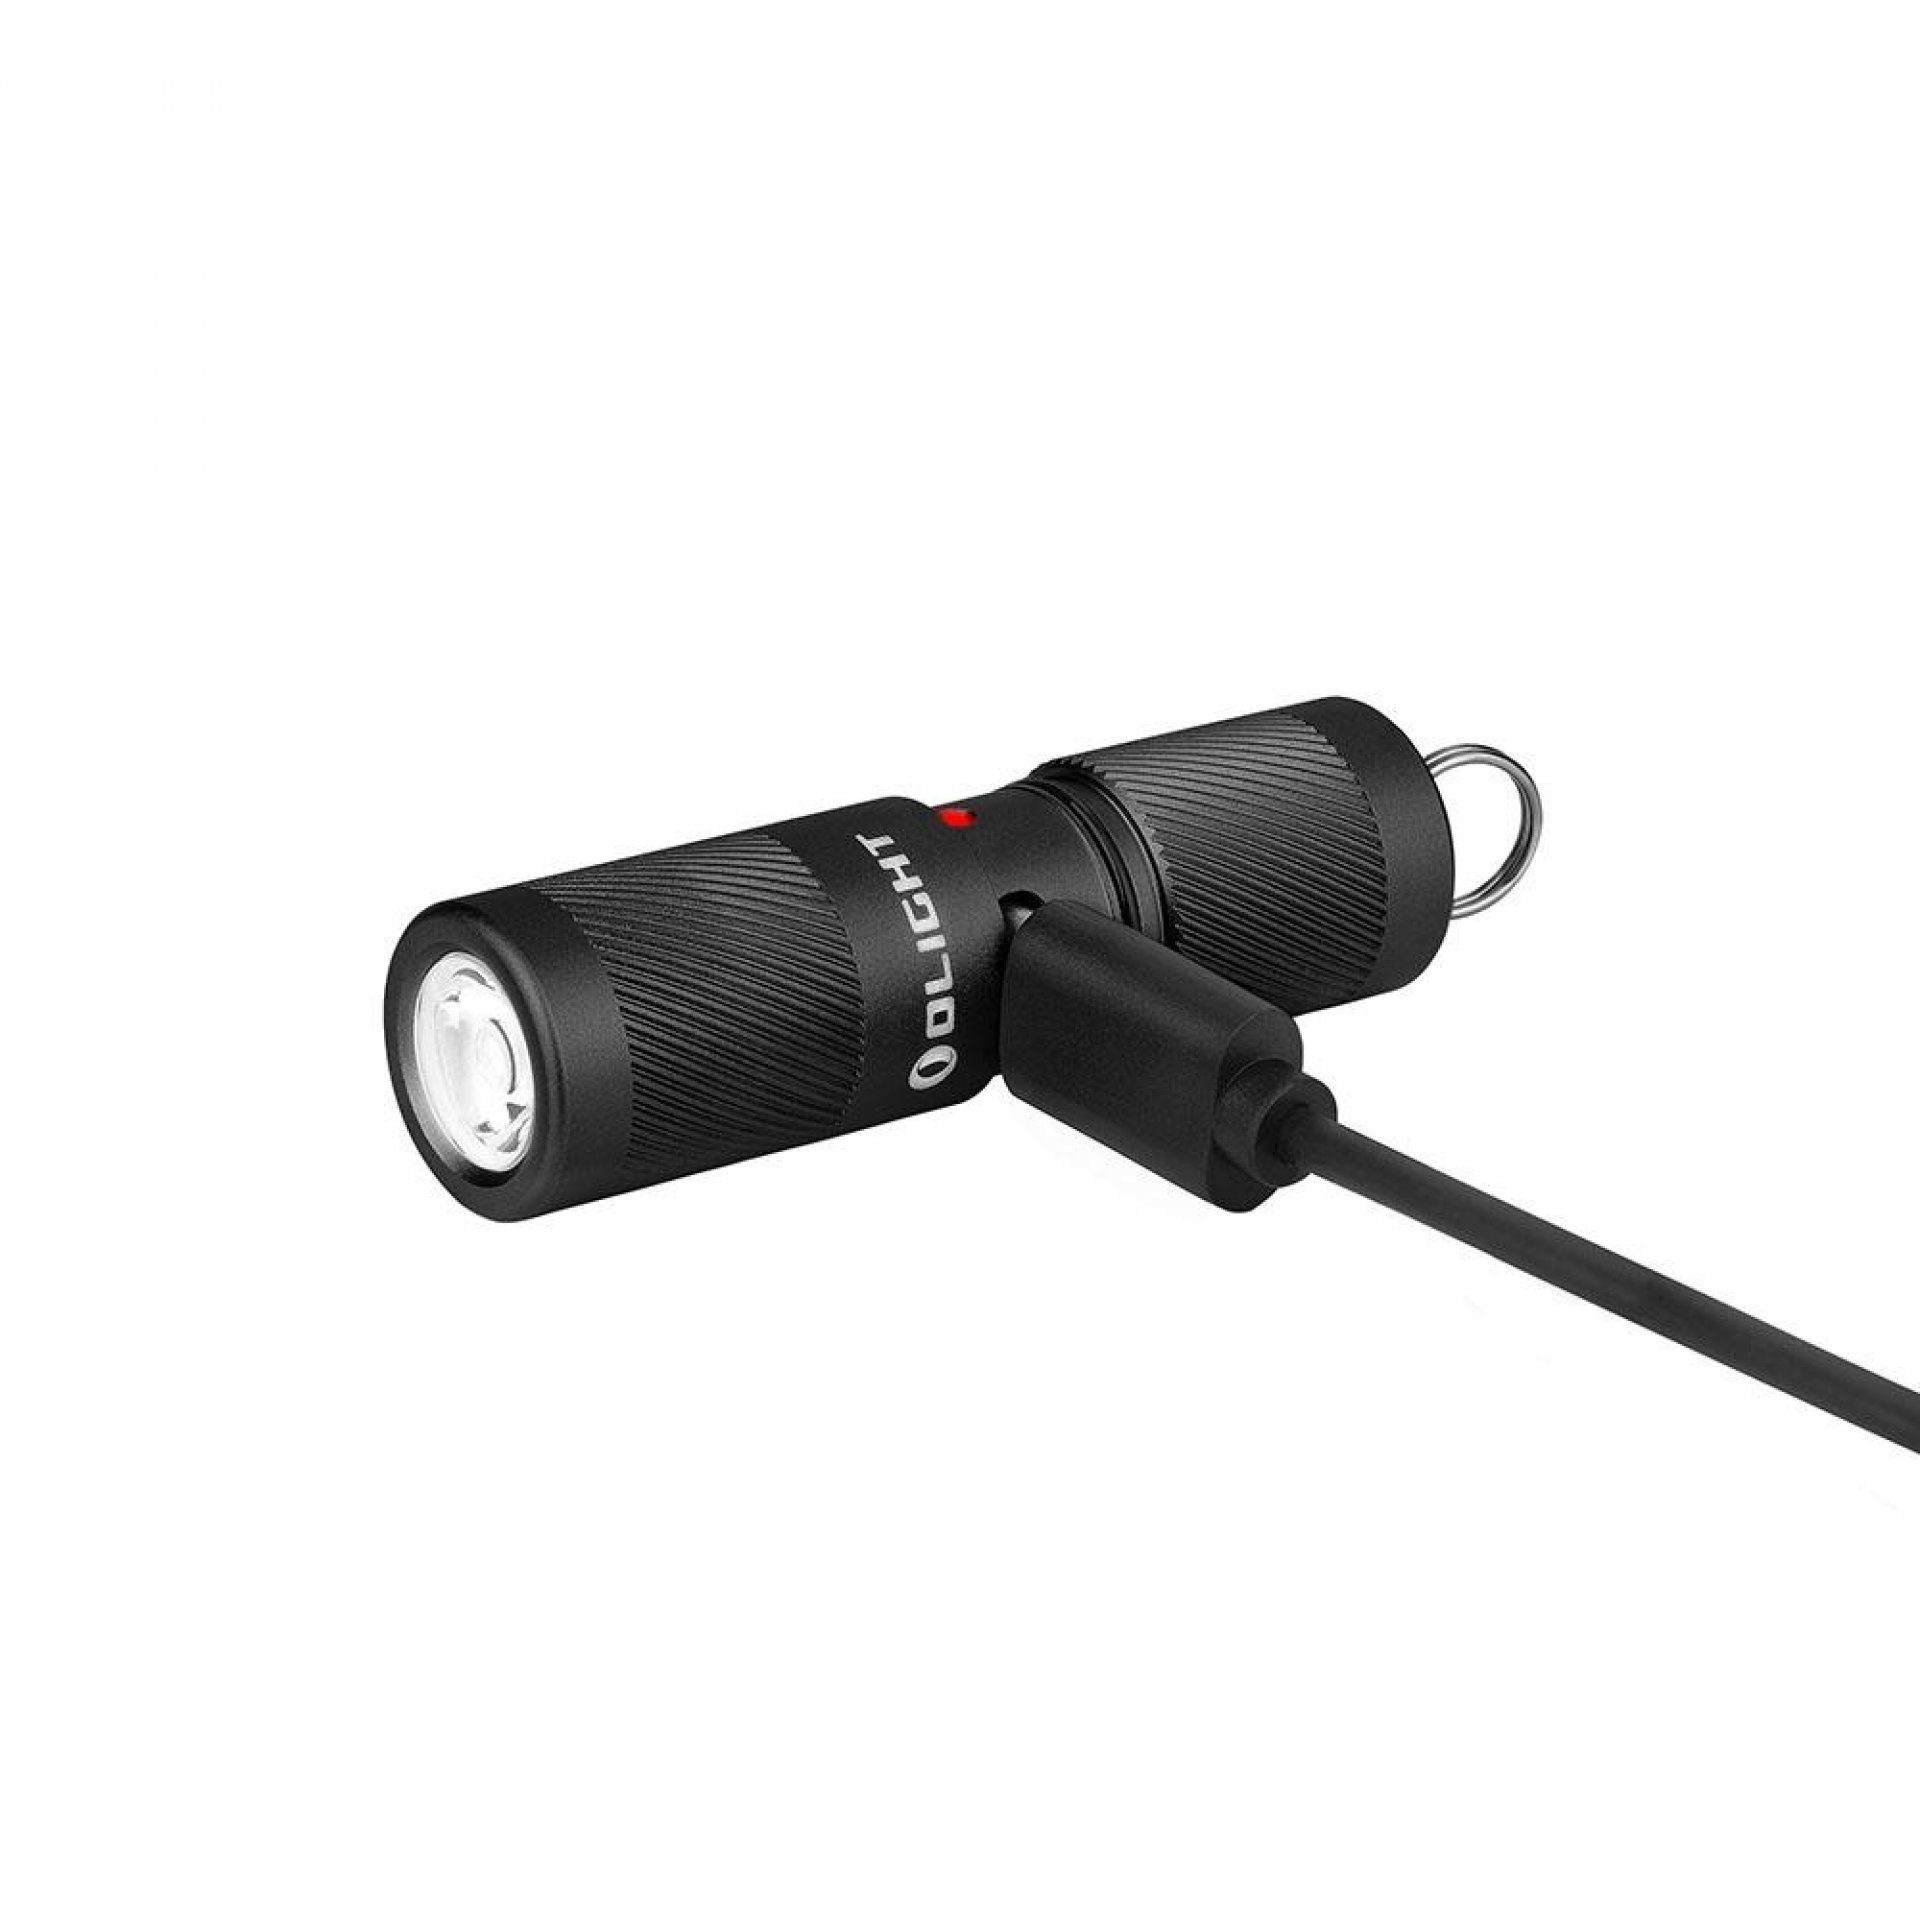 Pro schwarz Taschenlampe LED Taschenlampe Mini Schlüsselbund I1R2 OLIGHT